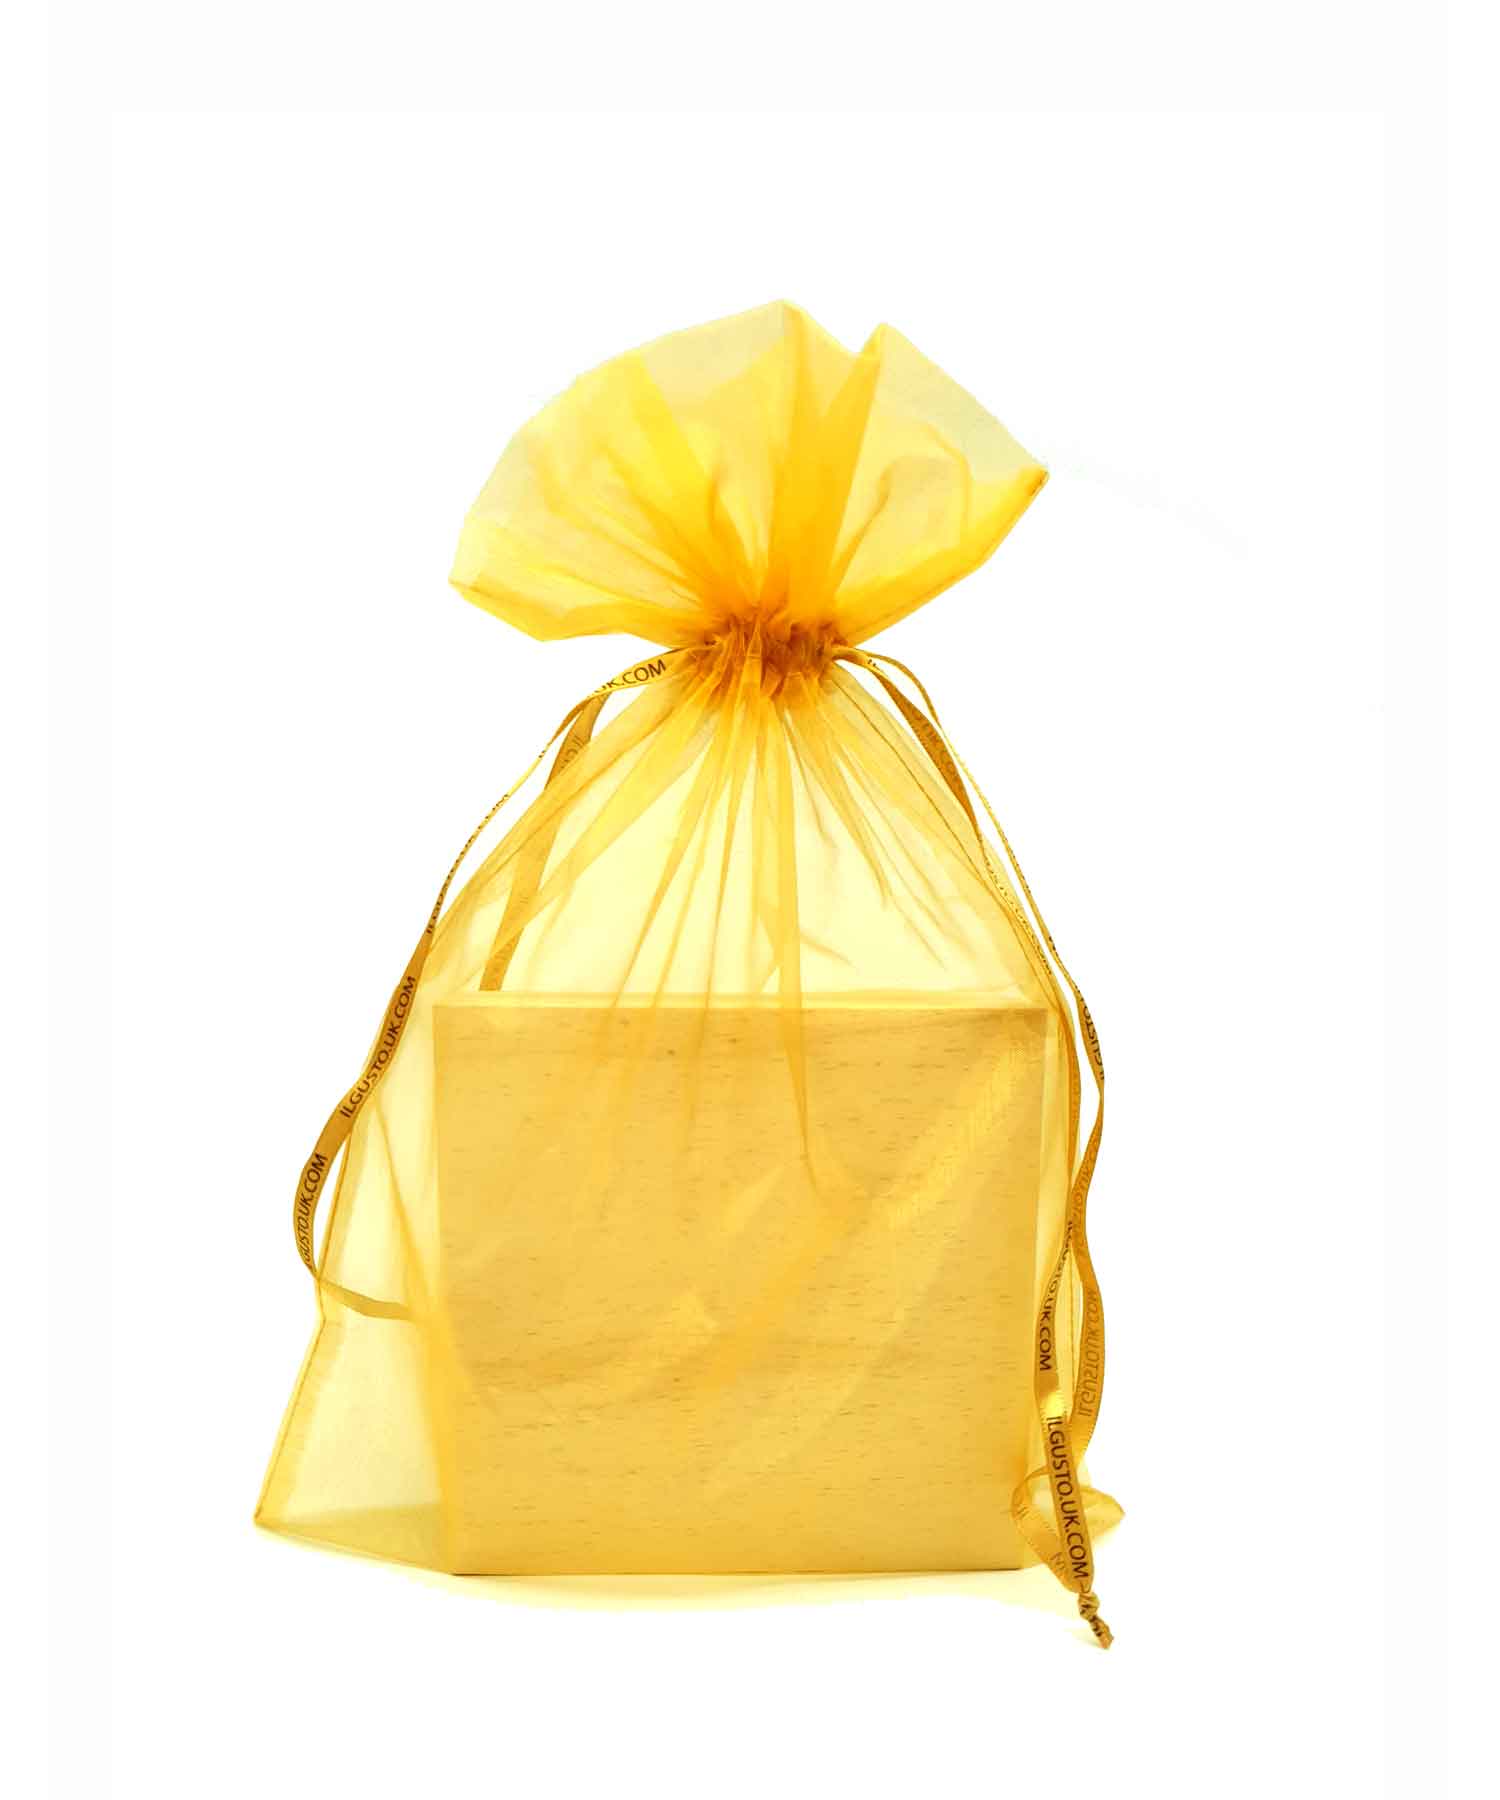 Organza Gift Bag